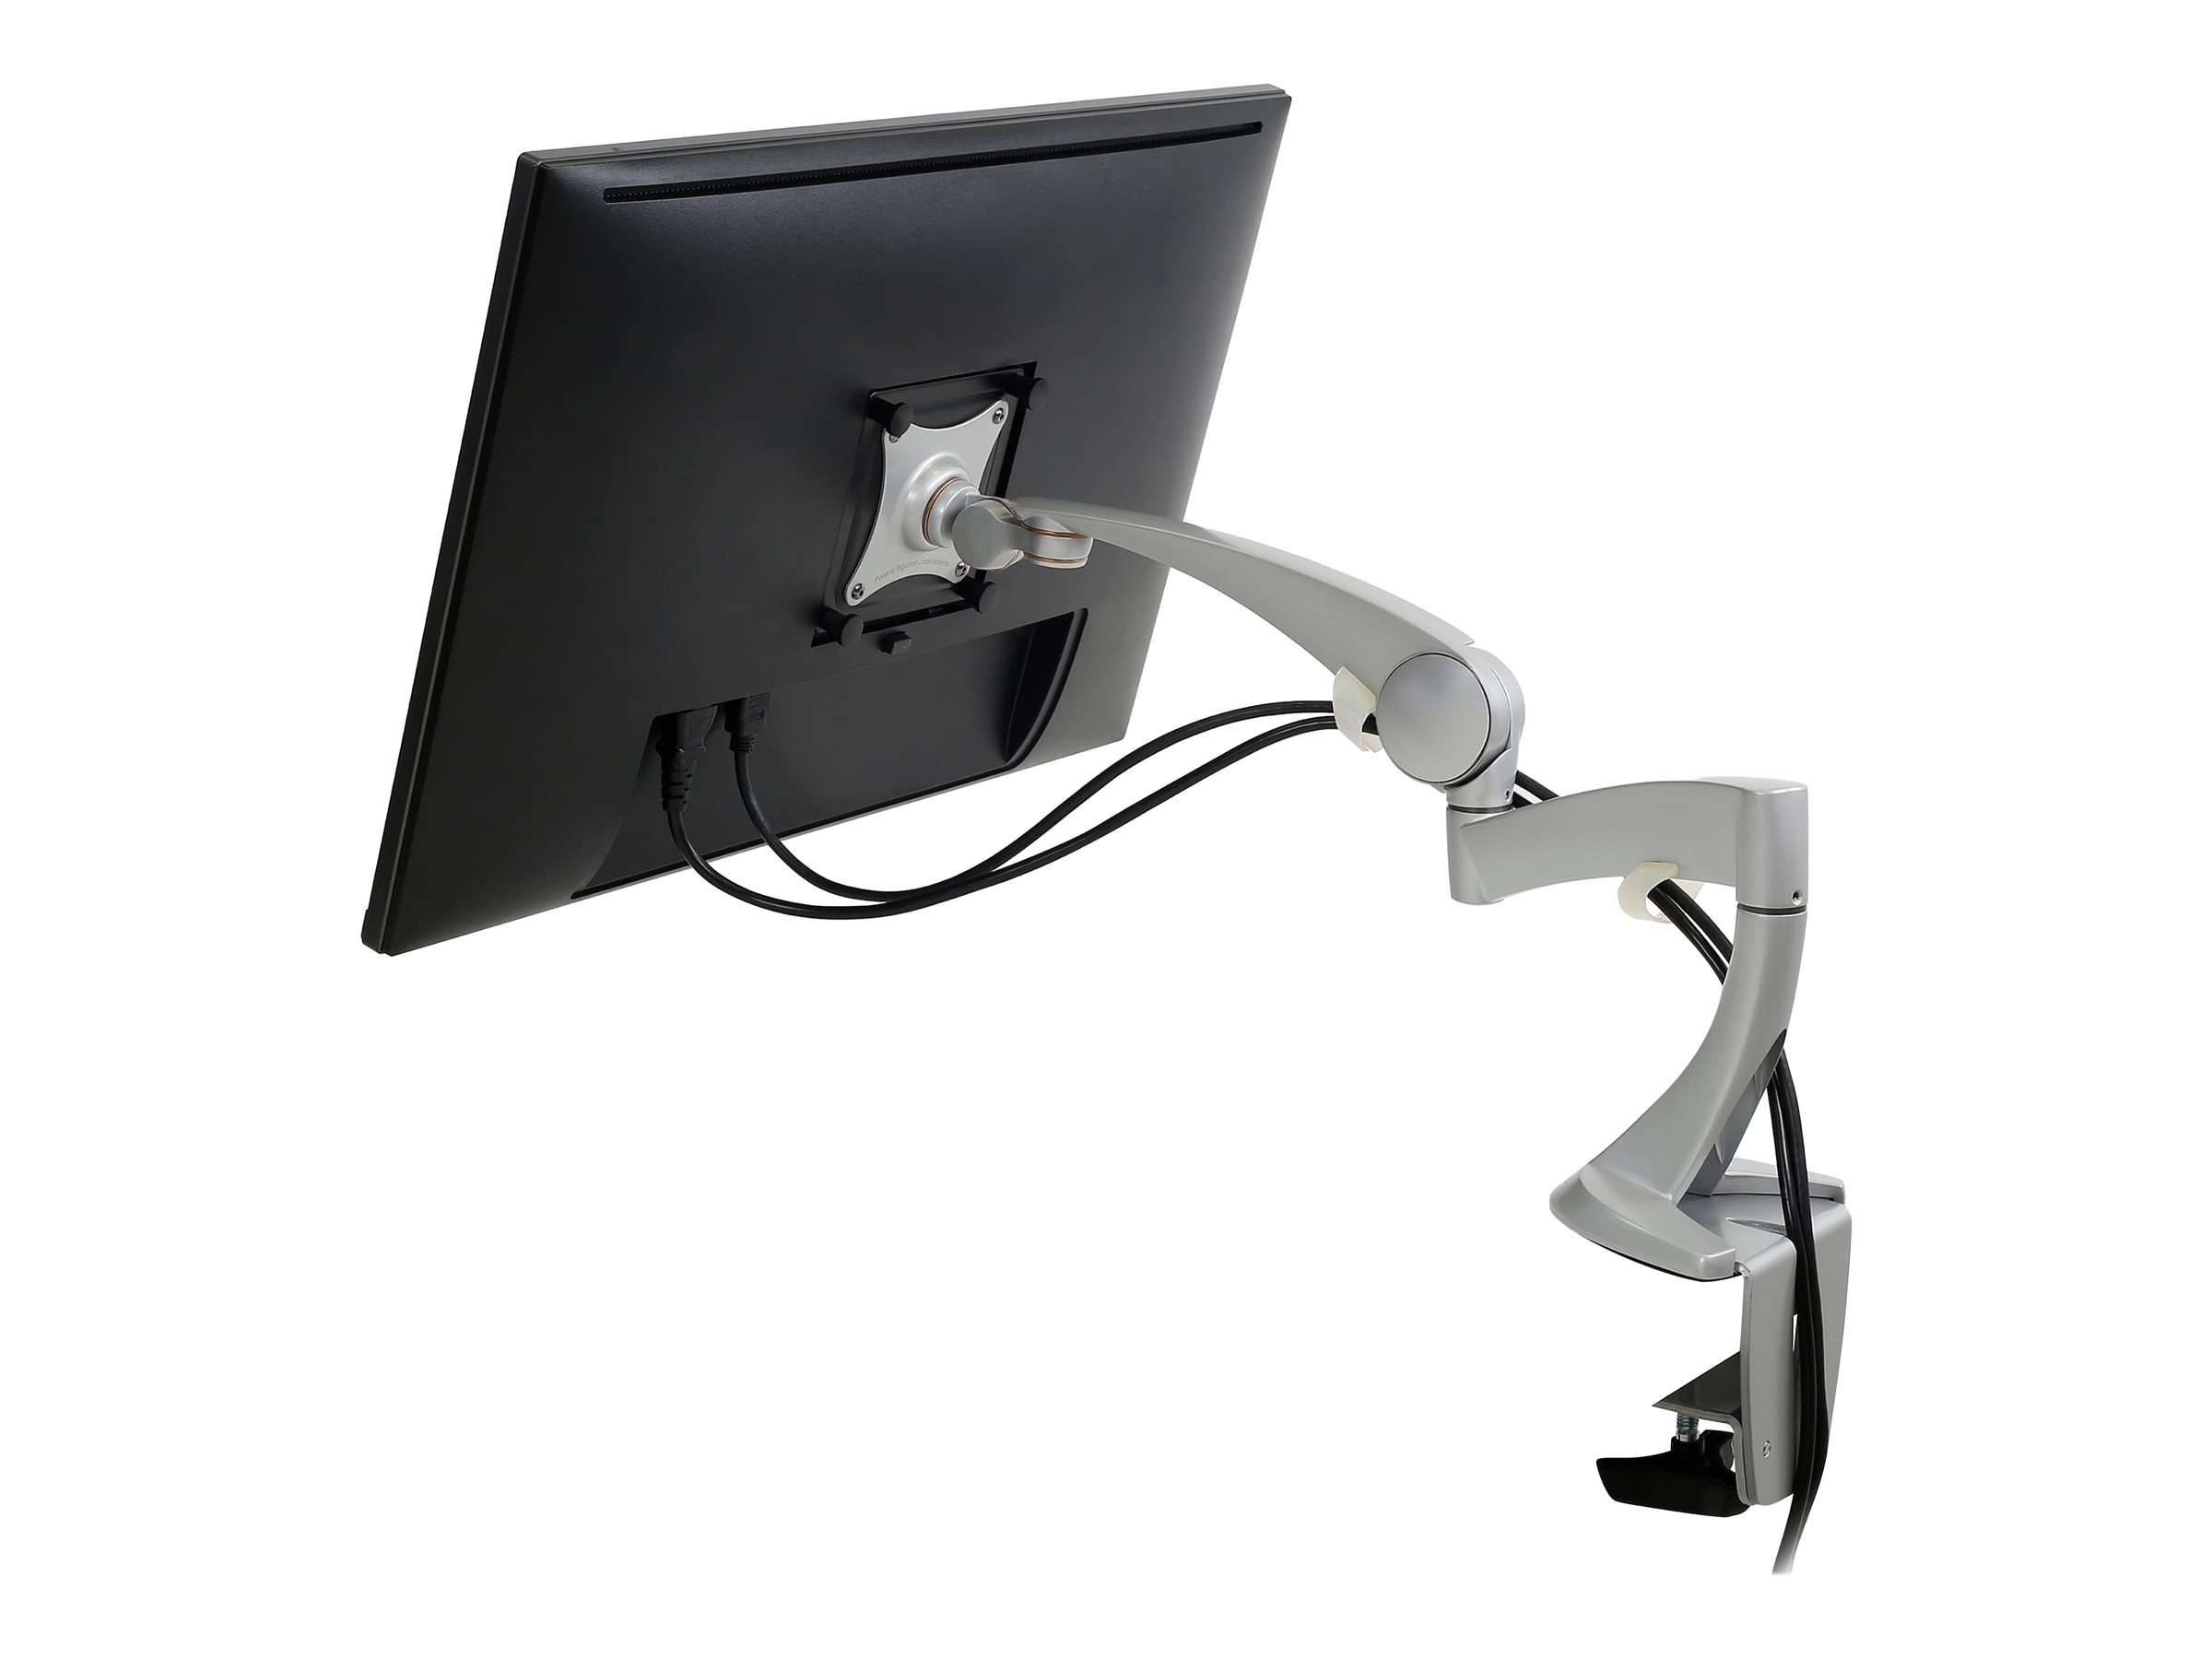 Ergotron Neo-Flex - Kit de montage (bras articulé, fixation par pince pour bureau, montage par passe-câble, base, extension) - pour Écran LCD - aluminium massif - argent - Taille d'écran : jusqu'à 24 pouces - 45-174-300 - Accessoires pour écran